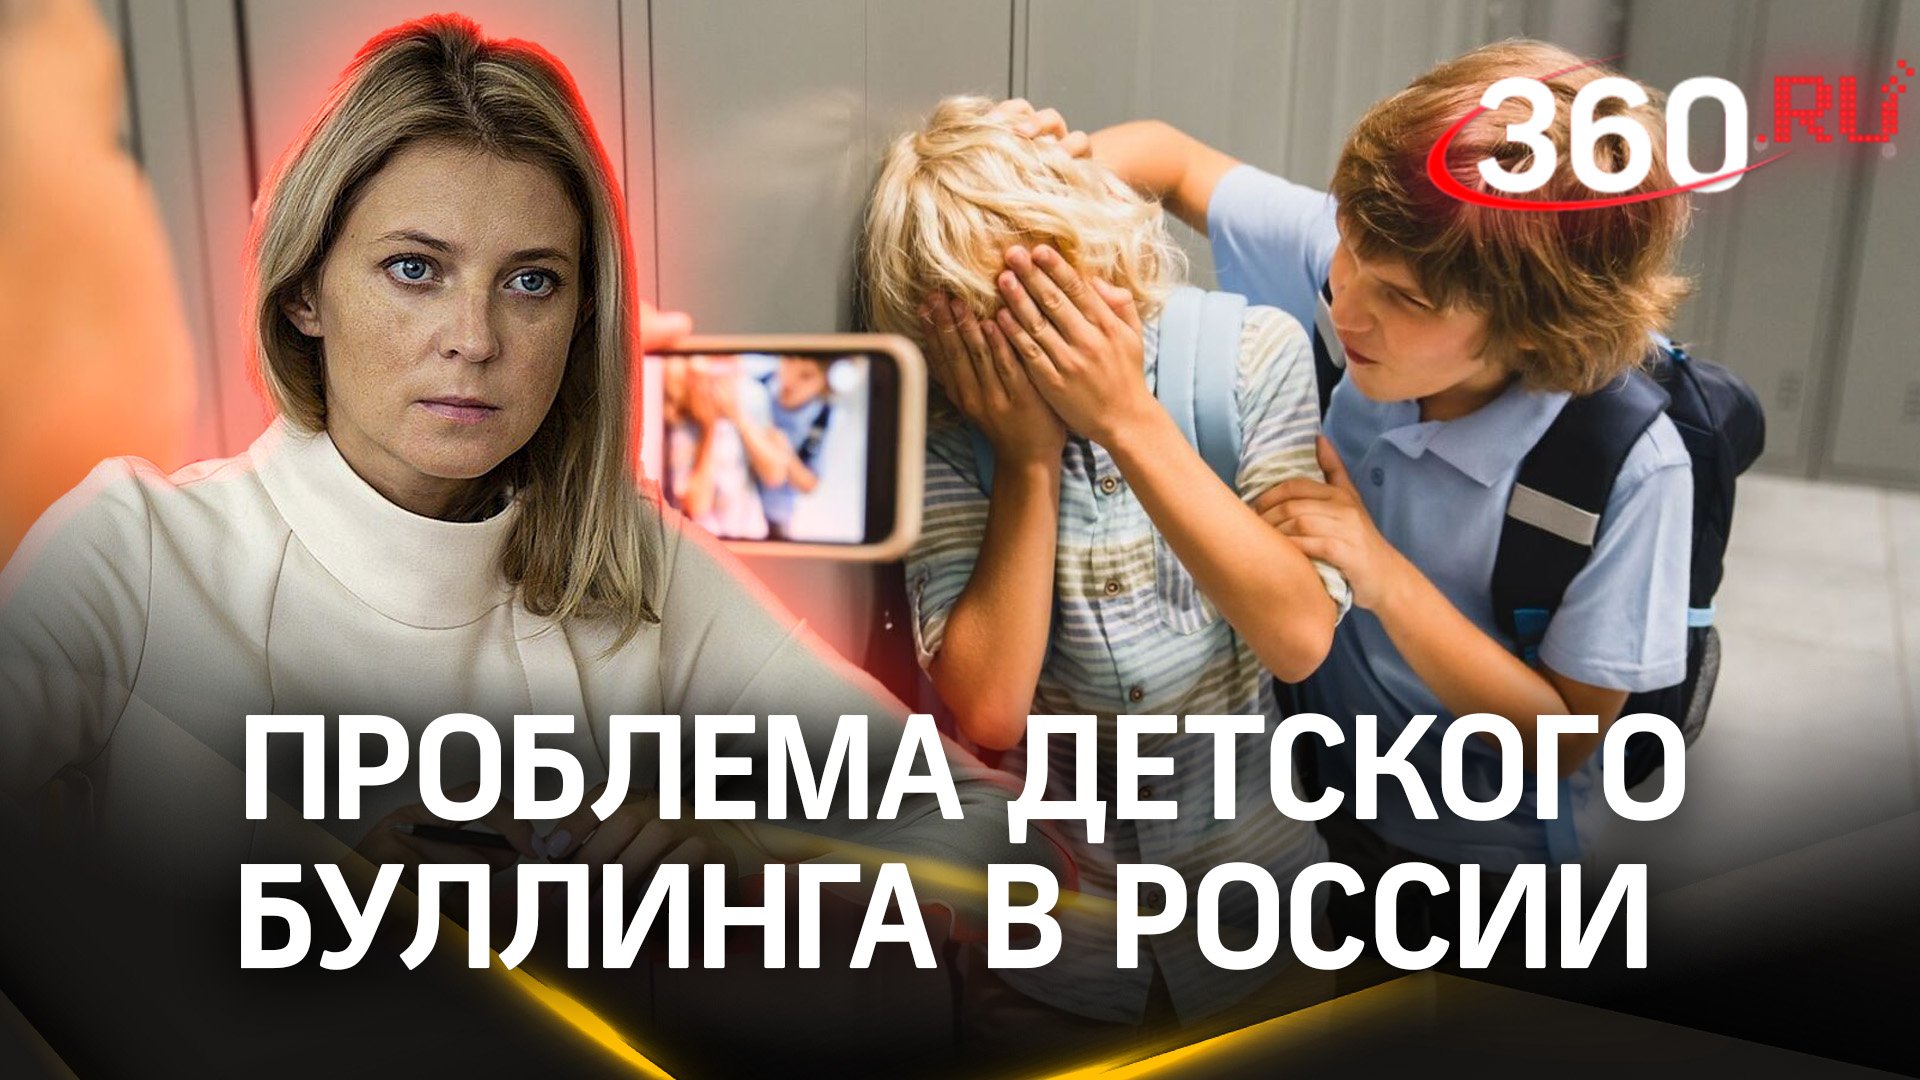 Интервью Аксиньи Гурьяновой с Натальей Поклонской — о проблеме детского буллинга в России